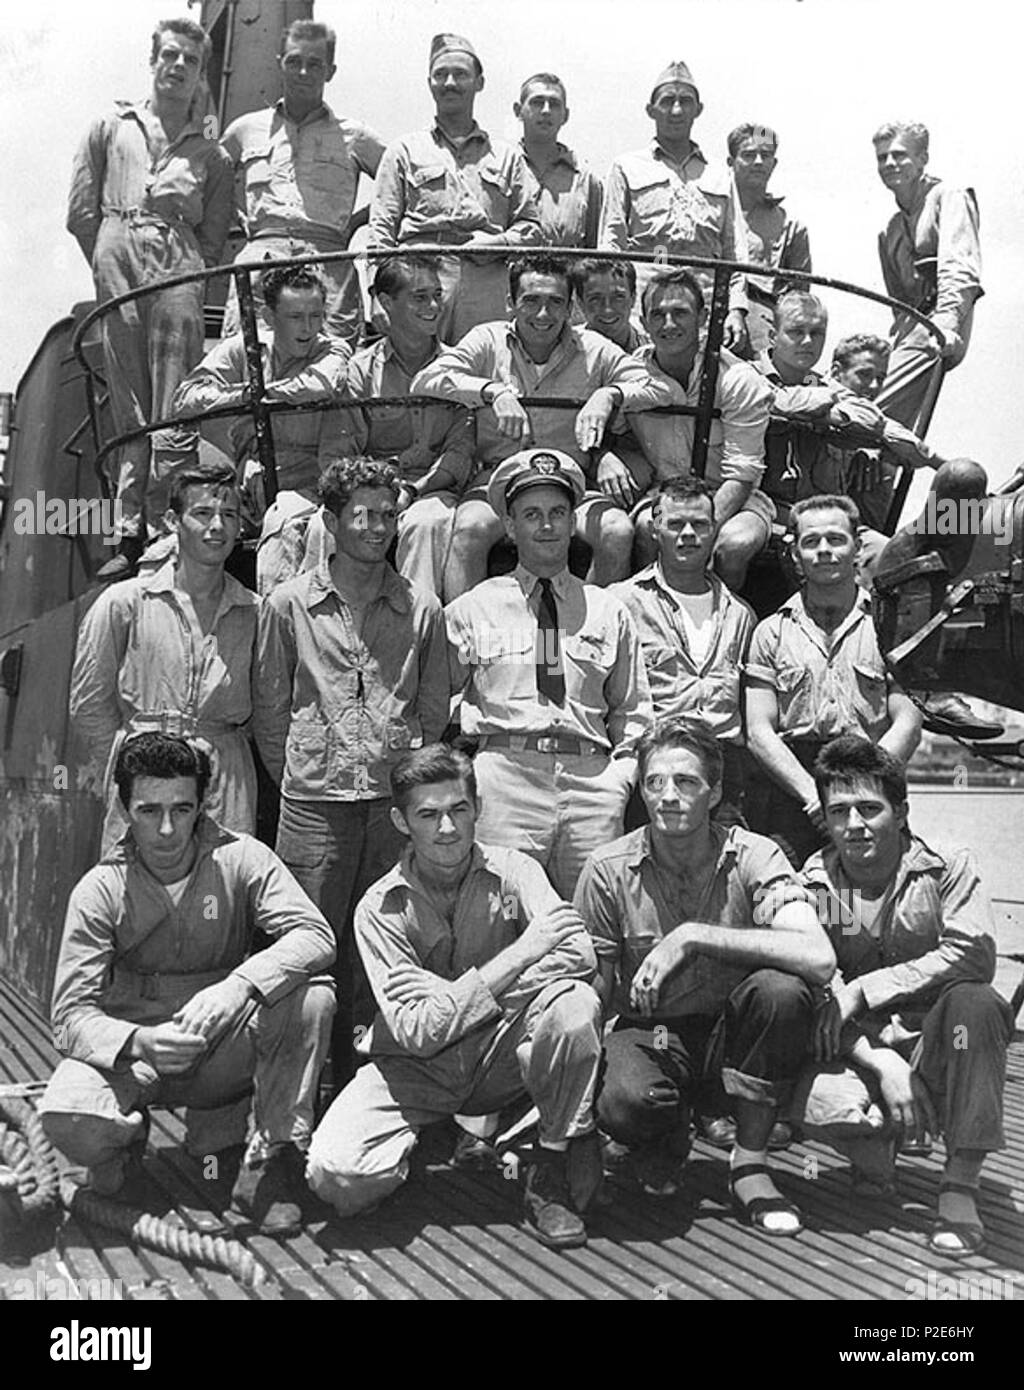 . Gli Stati Uniti Navy sommergibile USS Tang (SS-306) a Pearl Harbor, Hawaii (USA), nel maggio 1944. Il sommergibile il Comandante, tenente comandante Richard H. O'Kane (centro), pone con i ventidue aircrewmen codolo che salvò off Truk durante il vettore incursioni aeree nel 29 aprile-1 maggio 1944. La fotografia è stata scattata al codolo di tornare al porto di perla dalla sua seconda guerra patrol, nel maggio 1944. I presenti sono (in prima fila, da sinistra a destra): Aviazione Radioman 2a classe Harry B. Gemmell; aviazione Radioman 2a classe Giuseppe Hranek; aviazione Radioman 1a classe James L. Livingston; aviazione e ma Foto Stock